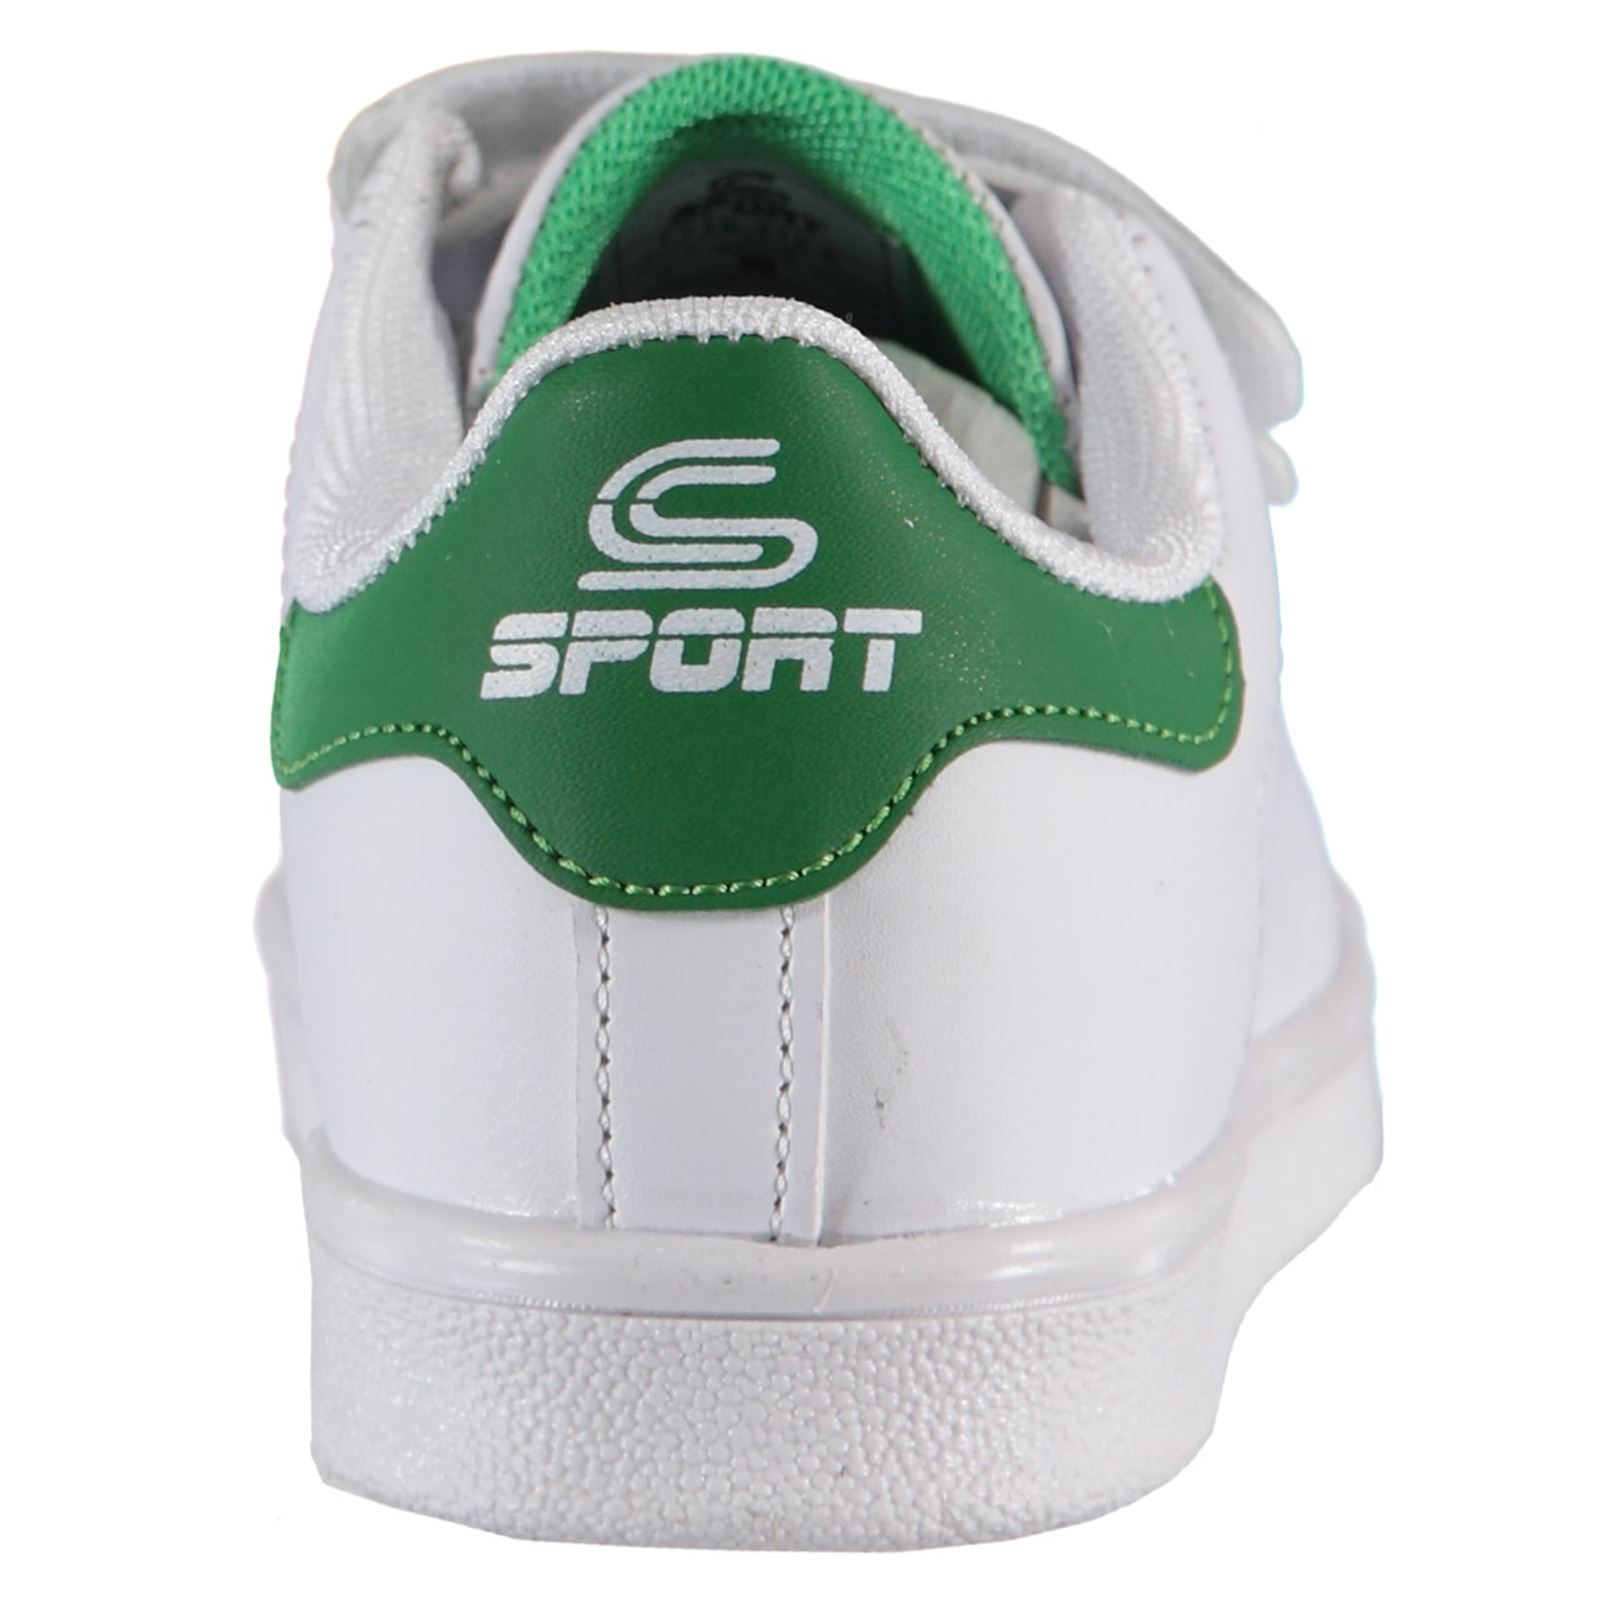 Sport Erkek Çocuk Spor Ayakkabı 31-35 Numara Beyaz